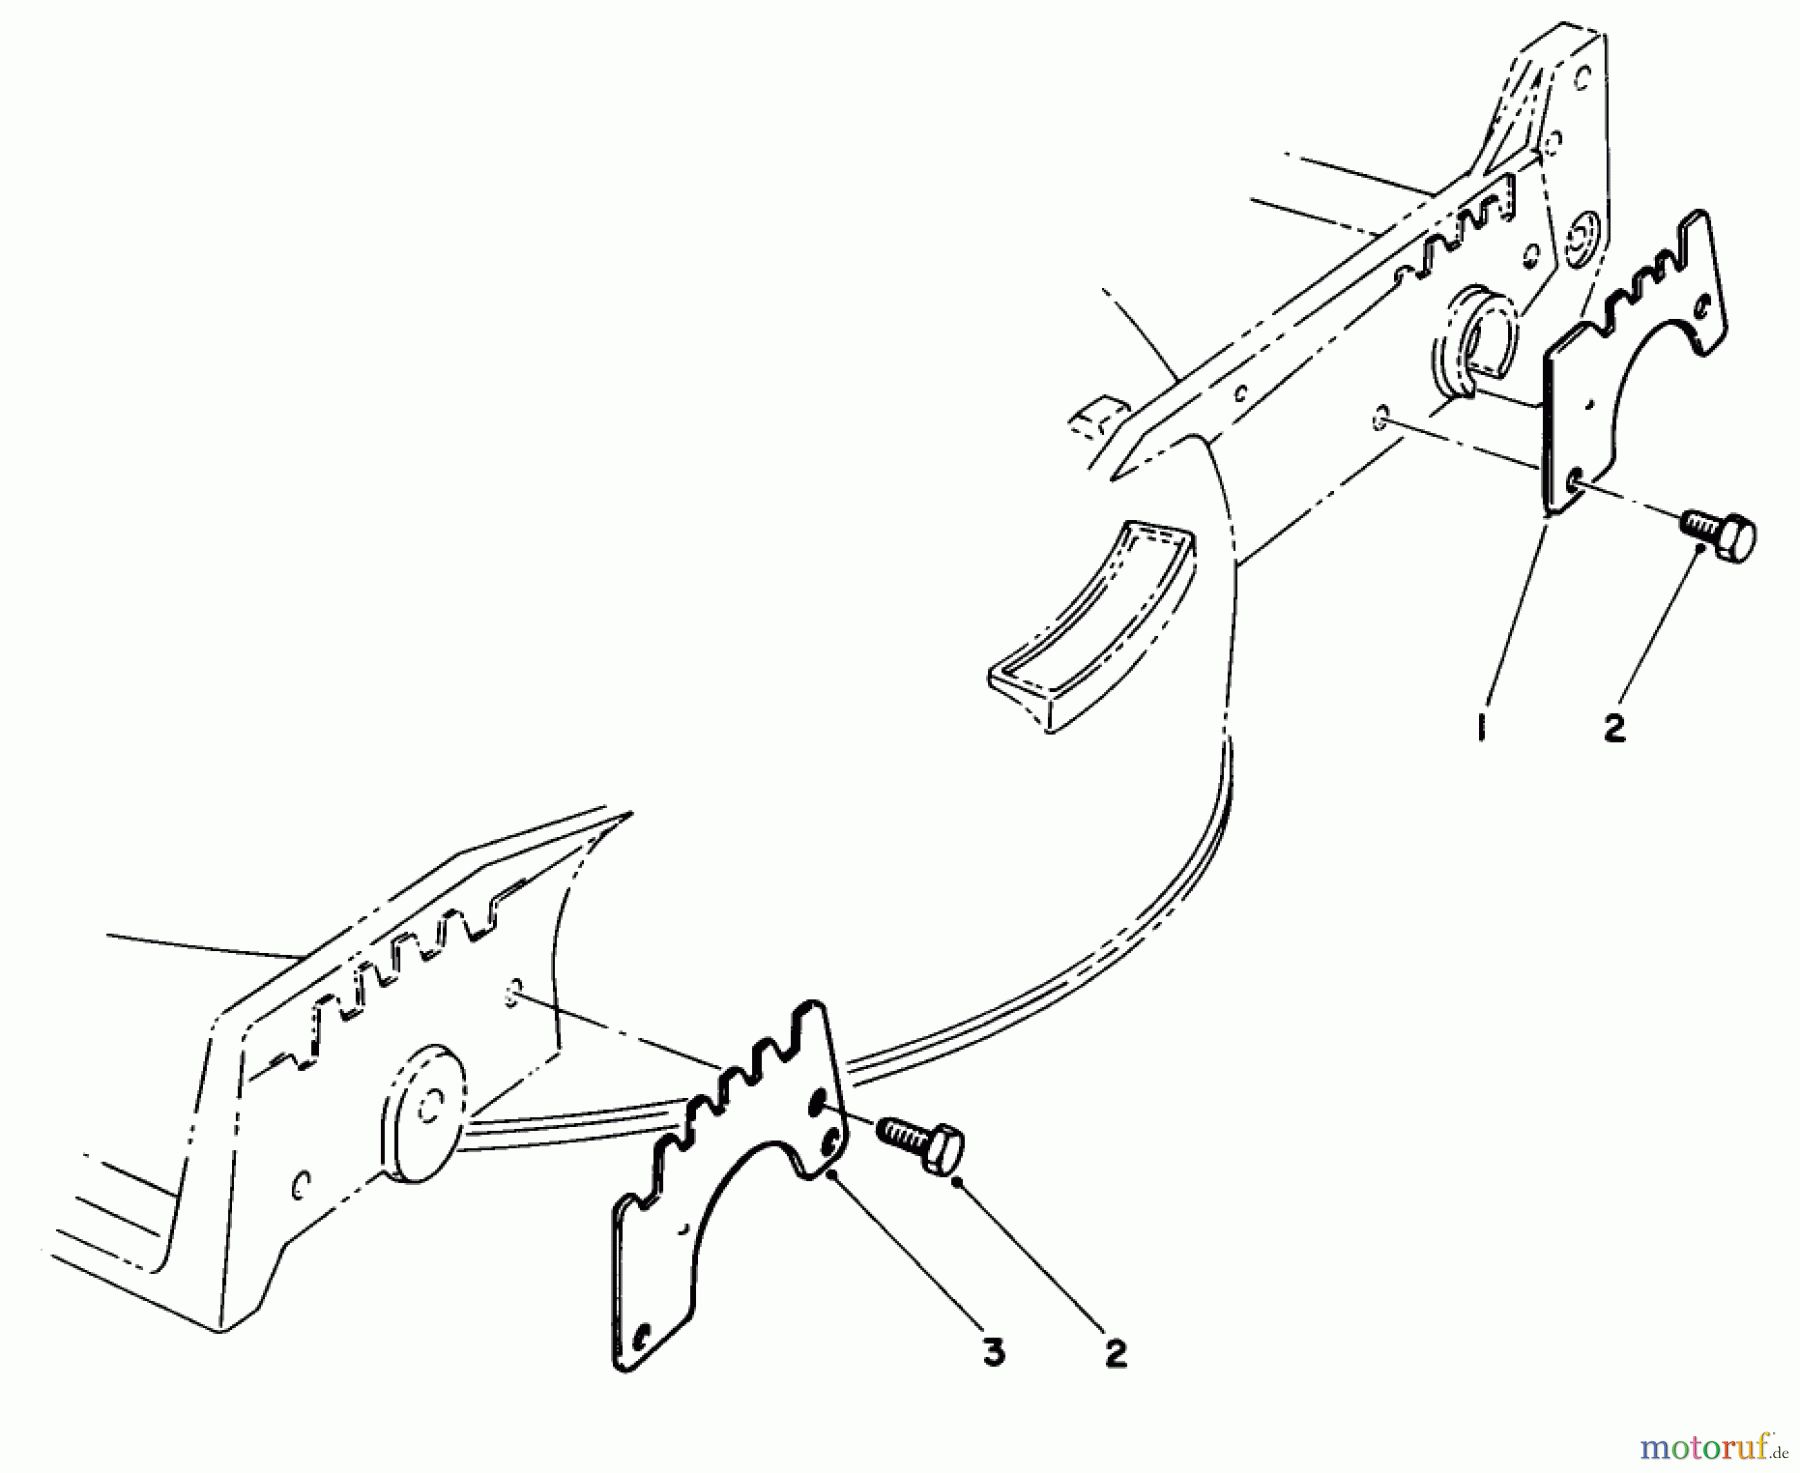  Toro Neu Mowers, Walk-Behind Seite 1 20671 - Toro Lawnmower, 1989 (9000001-9999999) WEAR PLATE MODEL NO. 49-4080 (OPTIONAL)